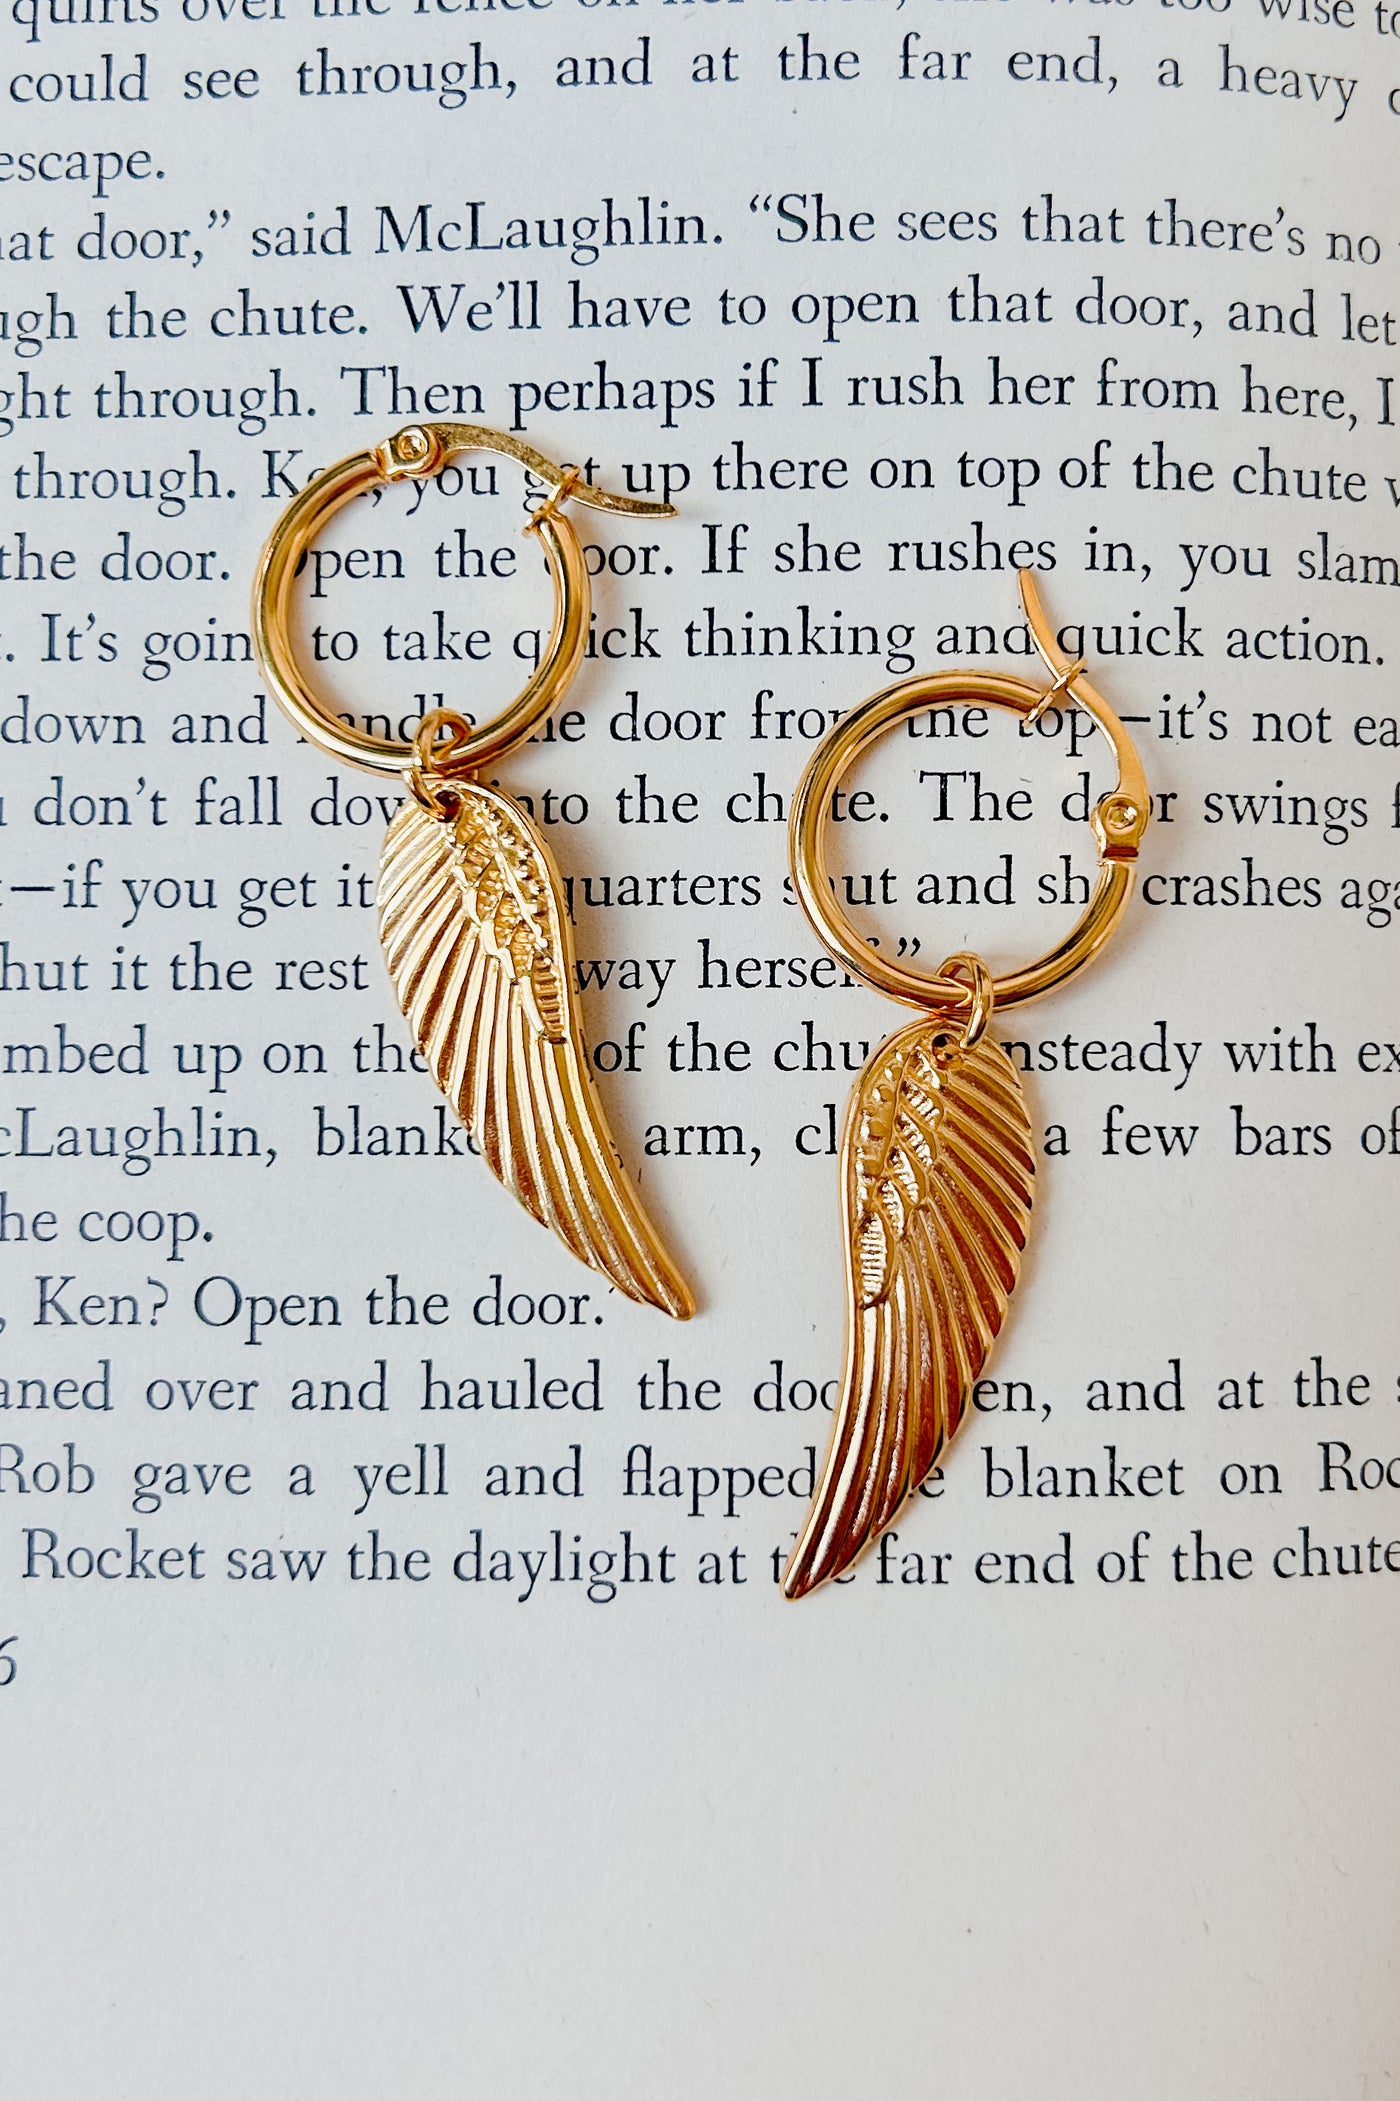 Earned Wings Bubble Hoop Angel Wing Earrings (Gold) - NanaMacs